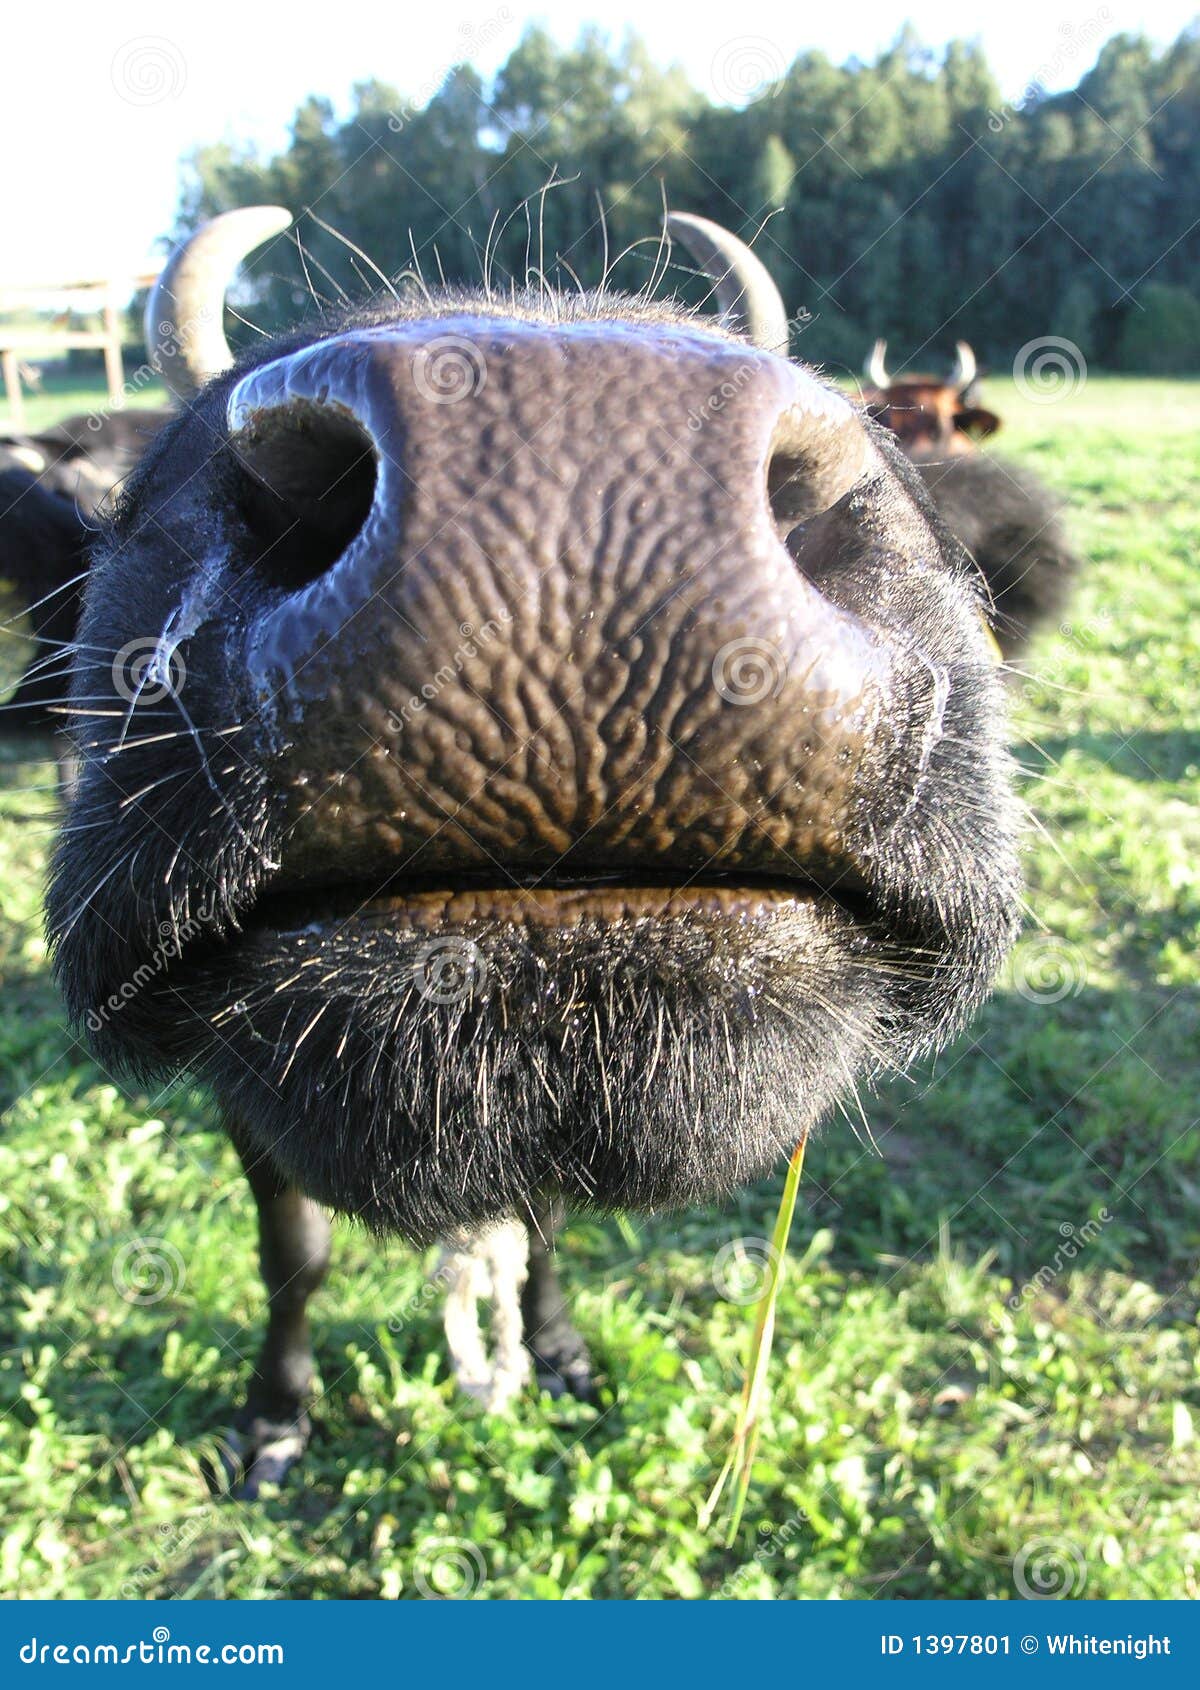 cow kisses clipart - photo #14